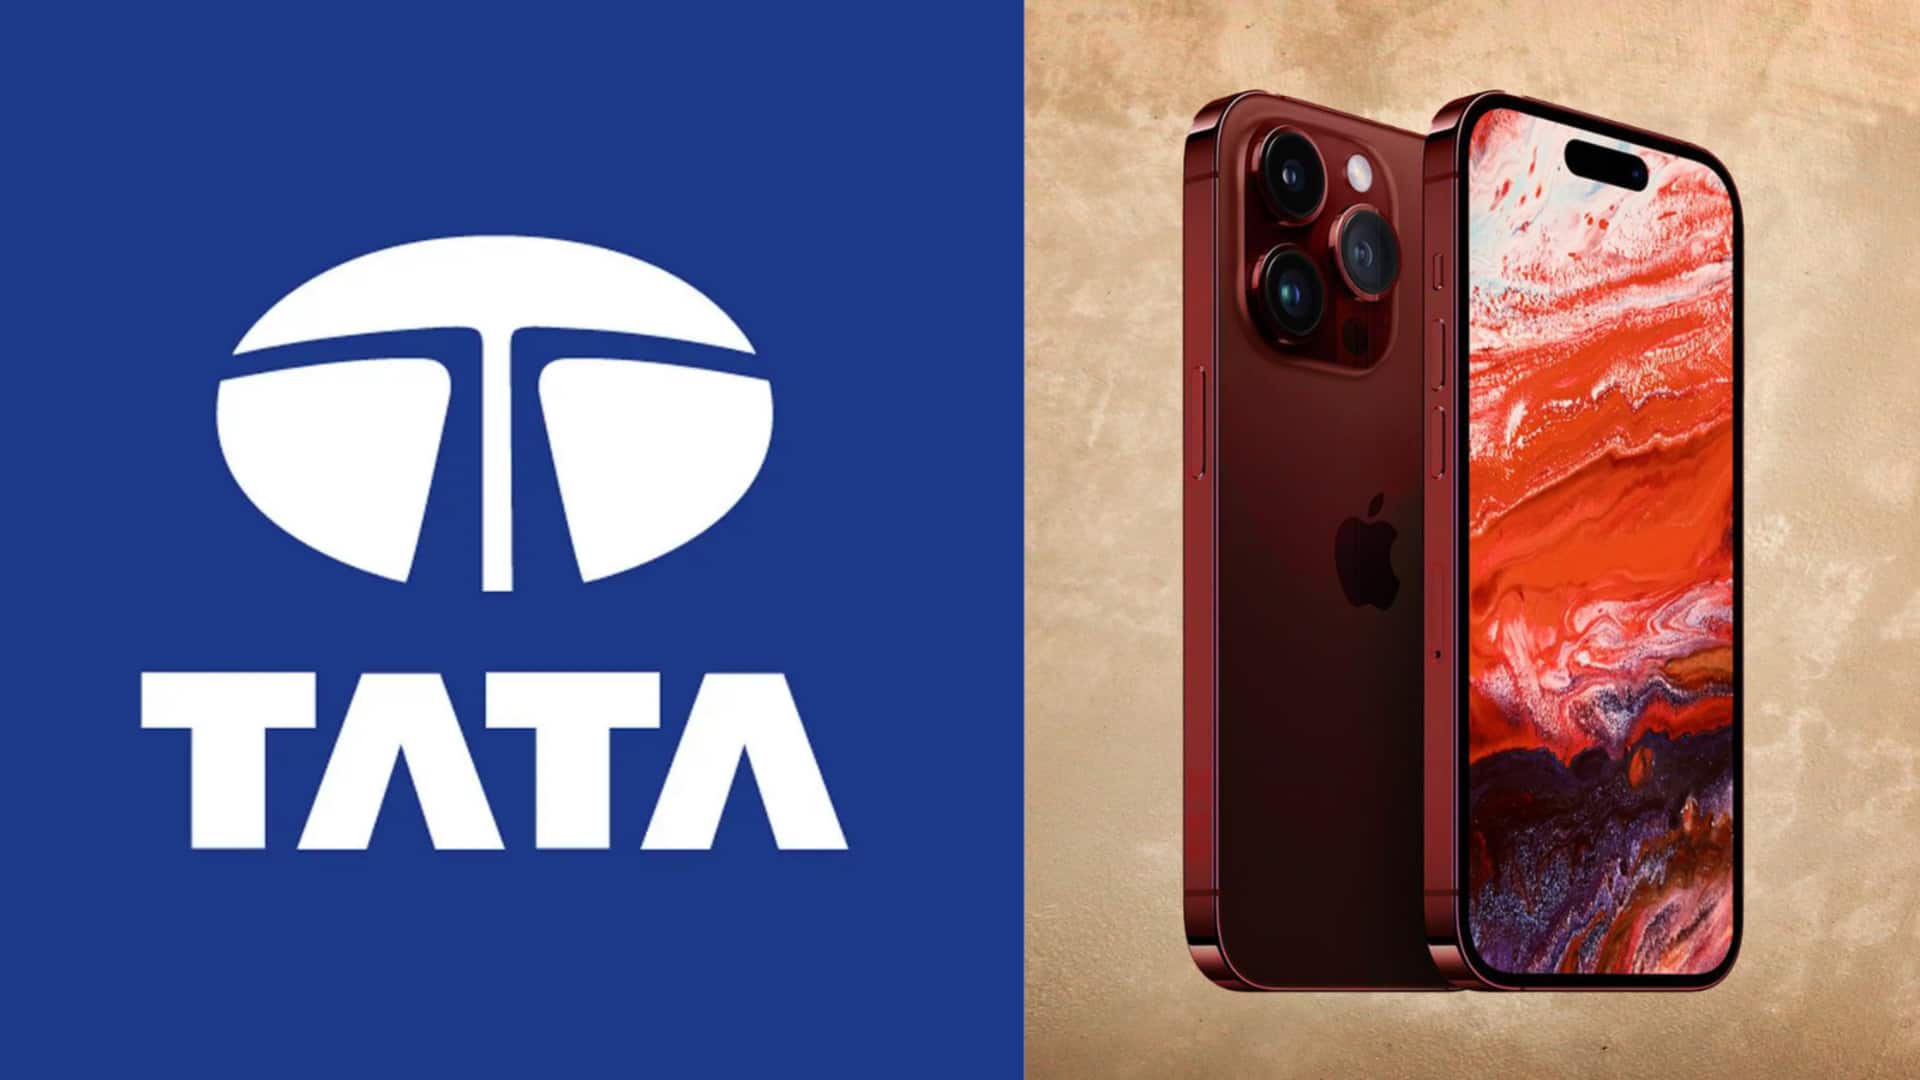 विस्ट्रॉन के अधिग्रण के करीब पहुंची टाटा, बन जाएगी आईफोन बनाने वाली पहली भारतीय कंपनी